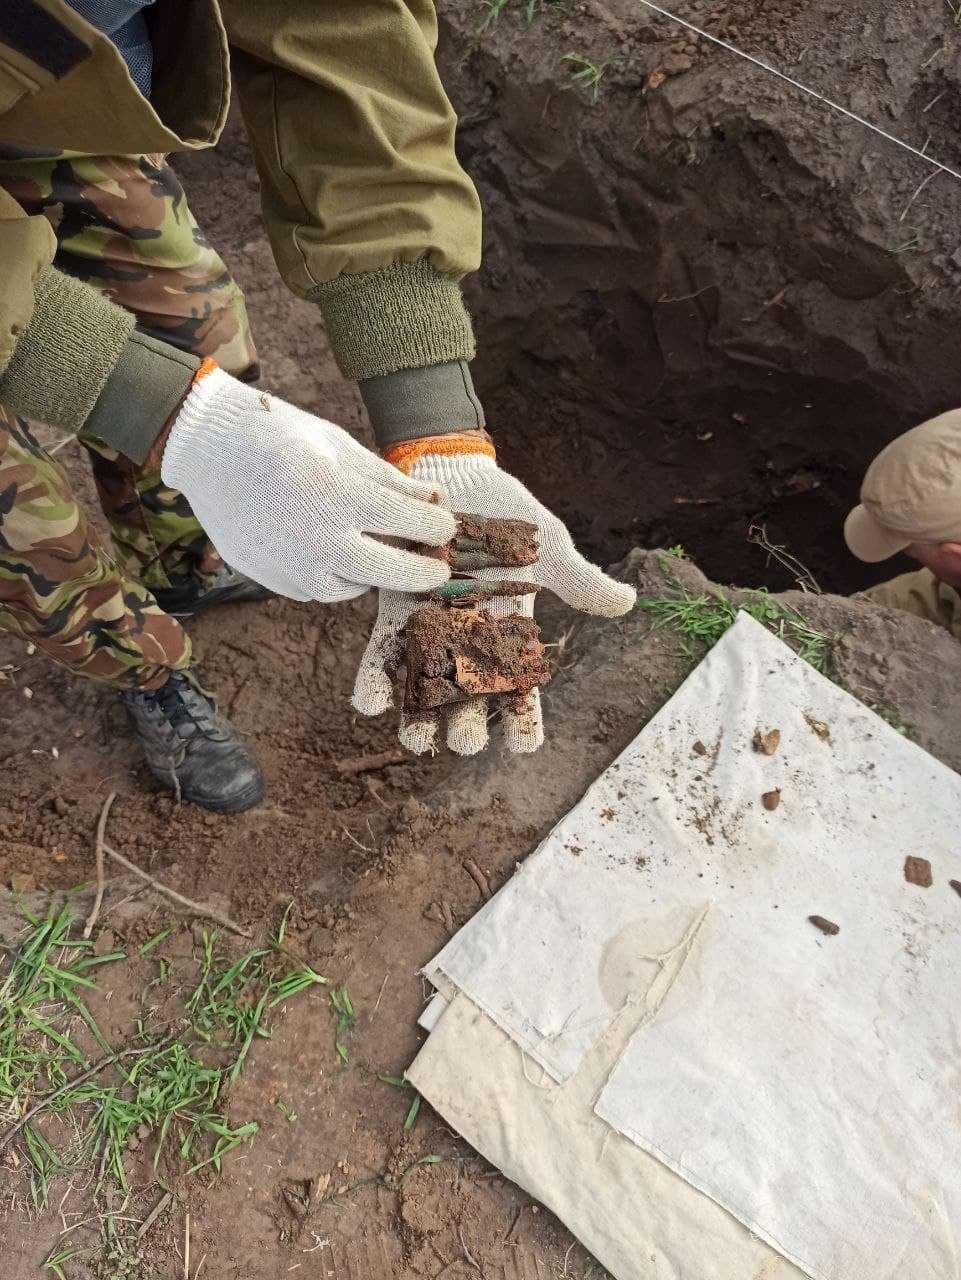 Новости Днепра про В Днепре мужчина нашел останки солдата во дворе своего дома